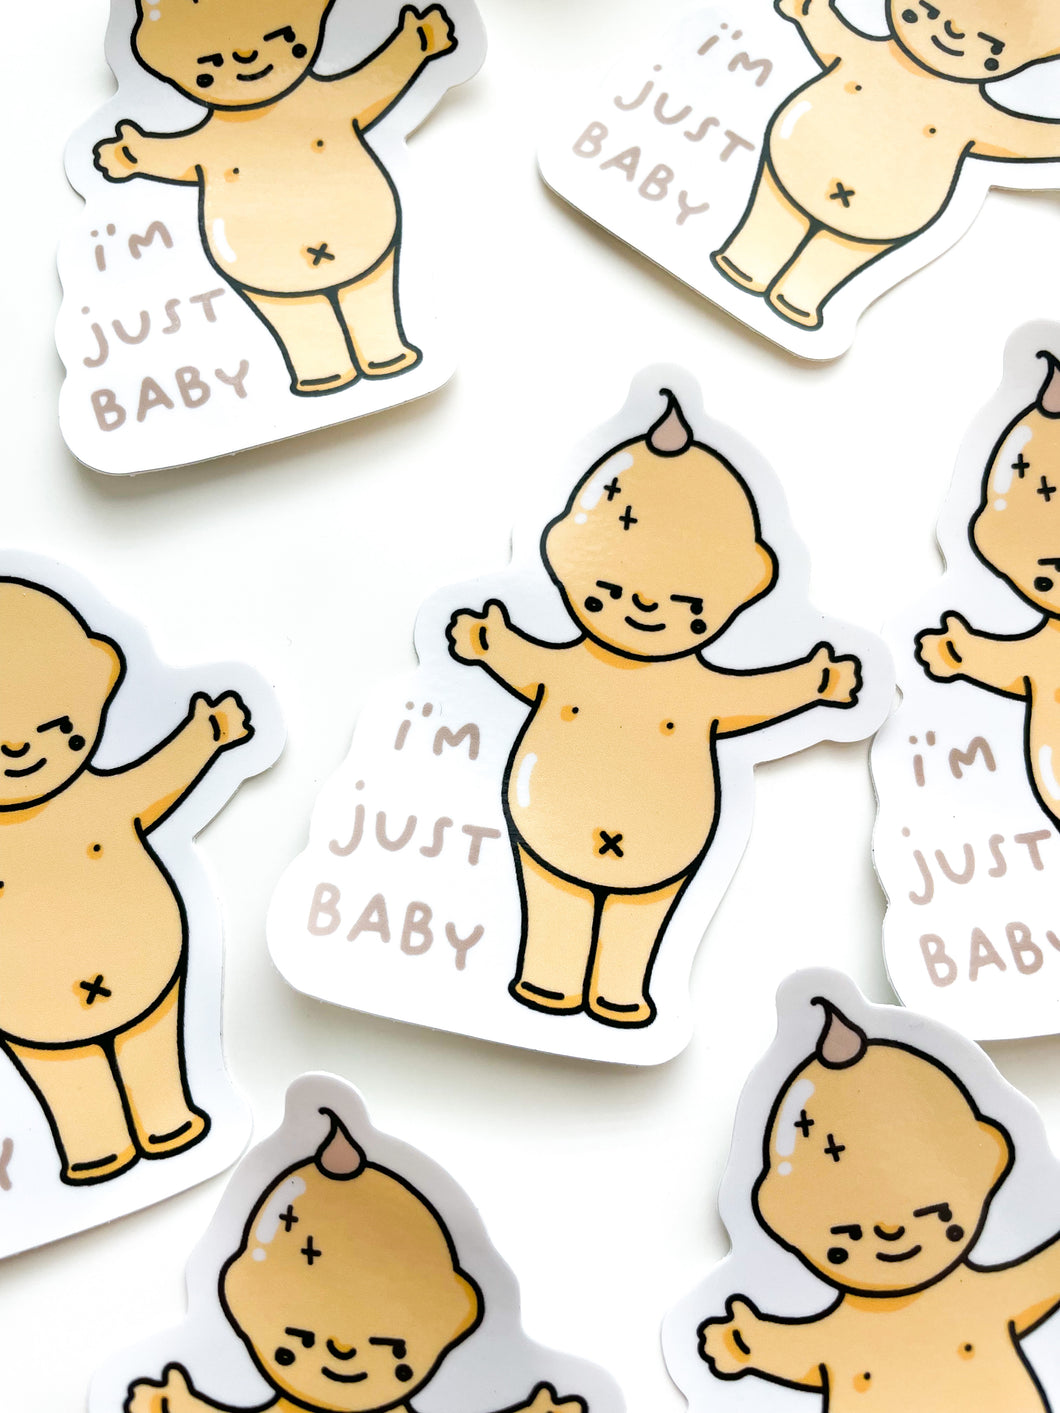 I’m Just Baby Sticker